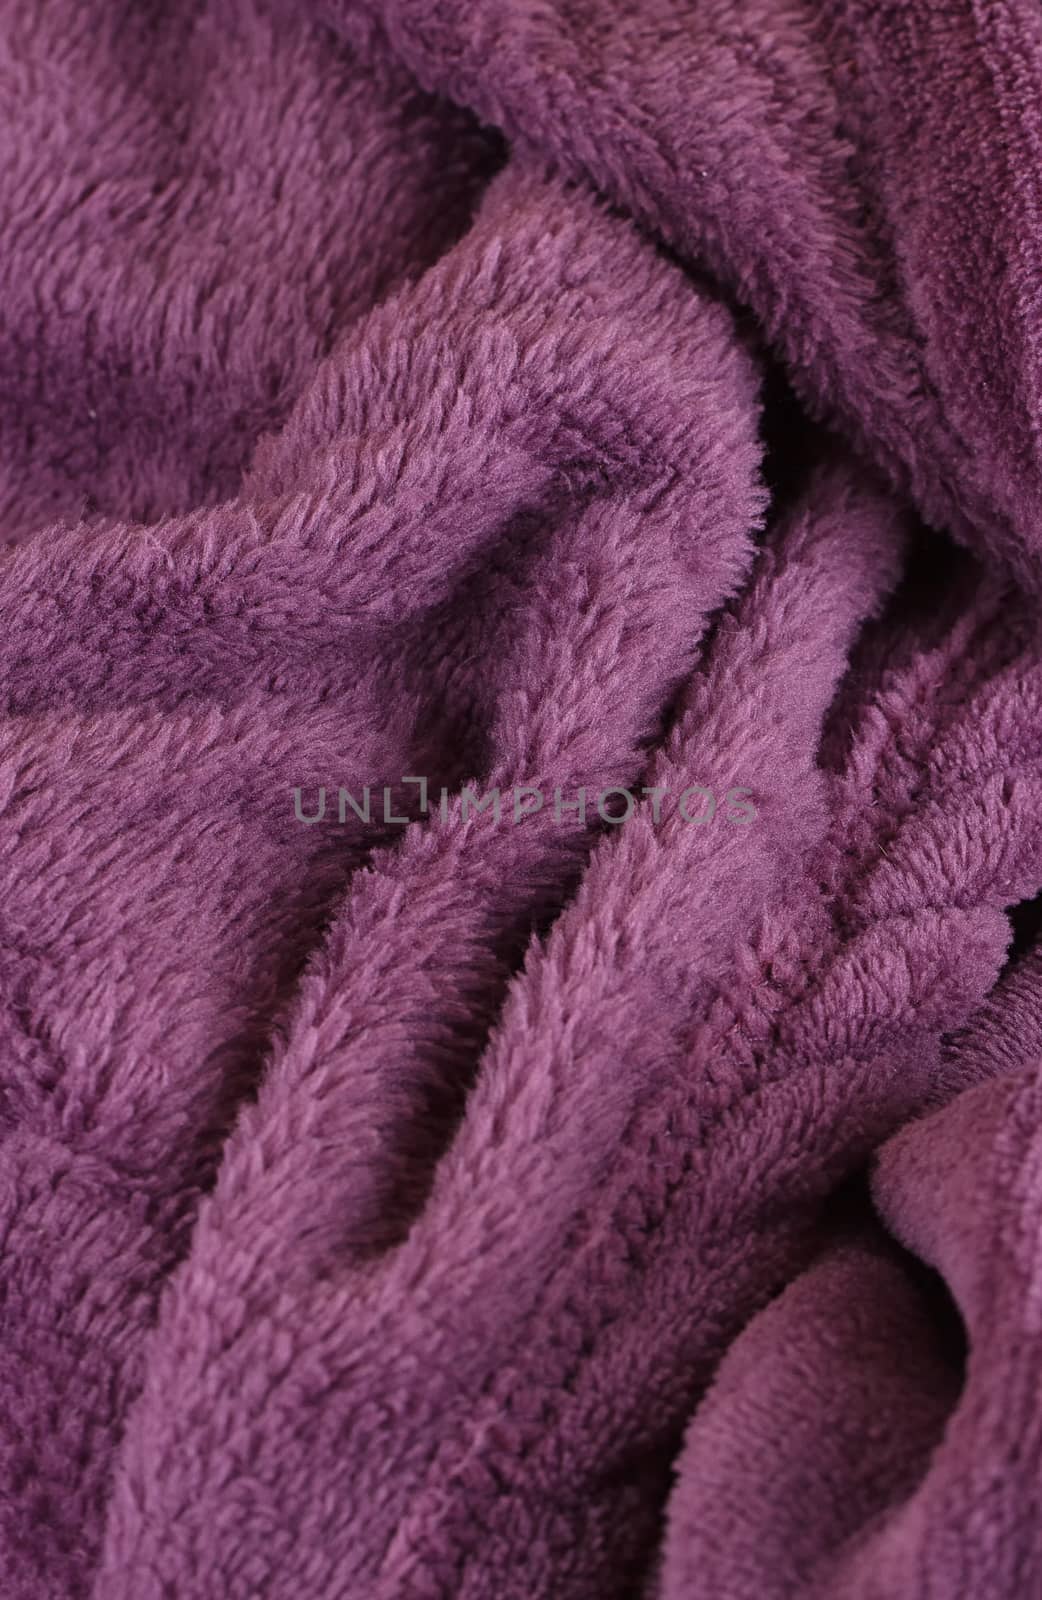 Dark purple bath fluffy towel or blanket